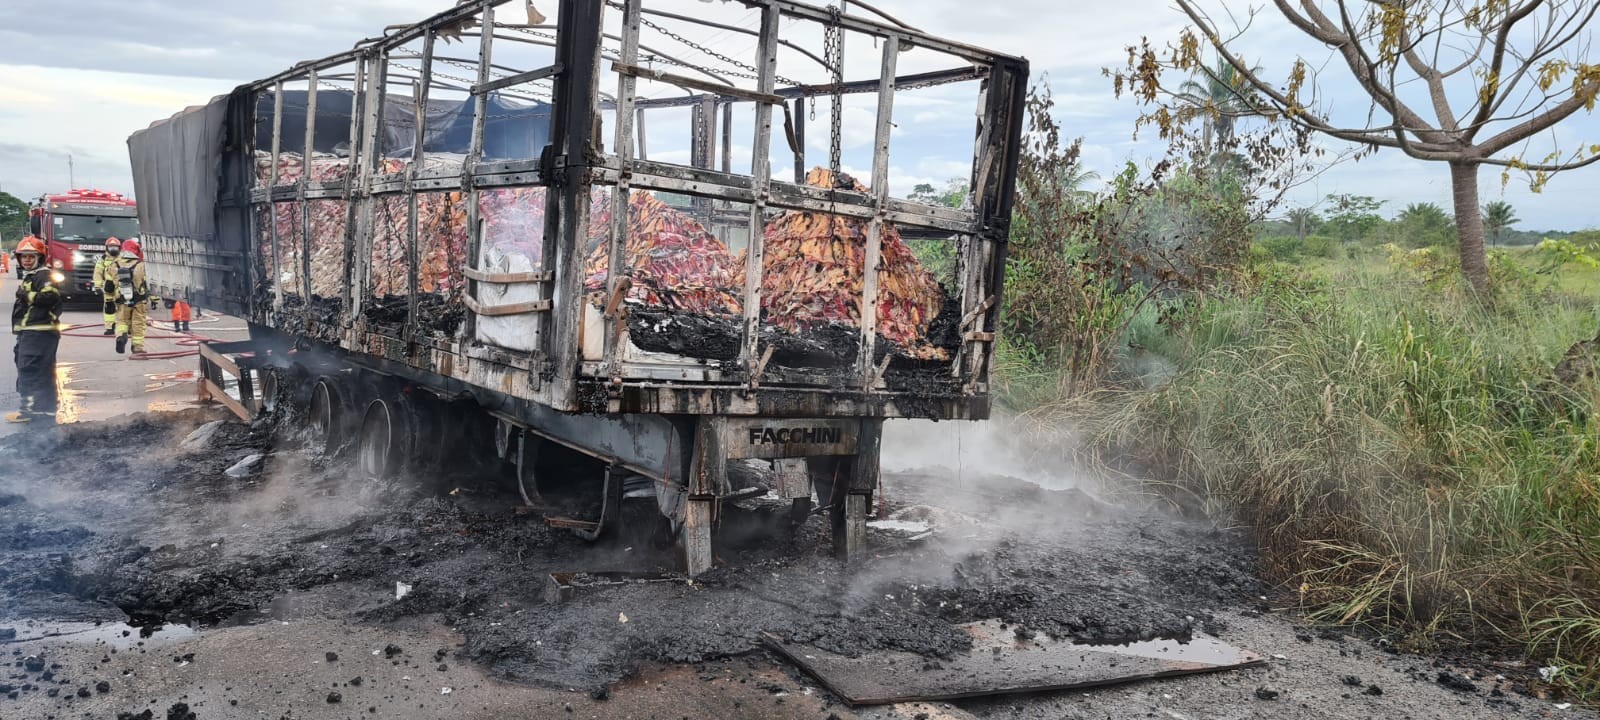 Carreta apresenta problema em pneu e pega fogo em rodovia no interior de Roraima